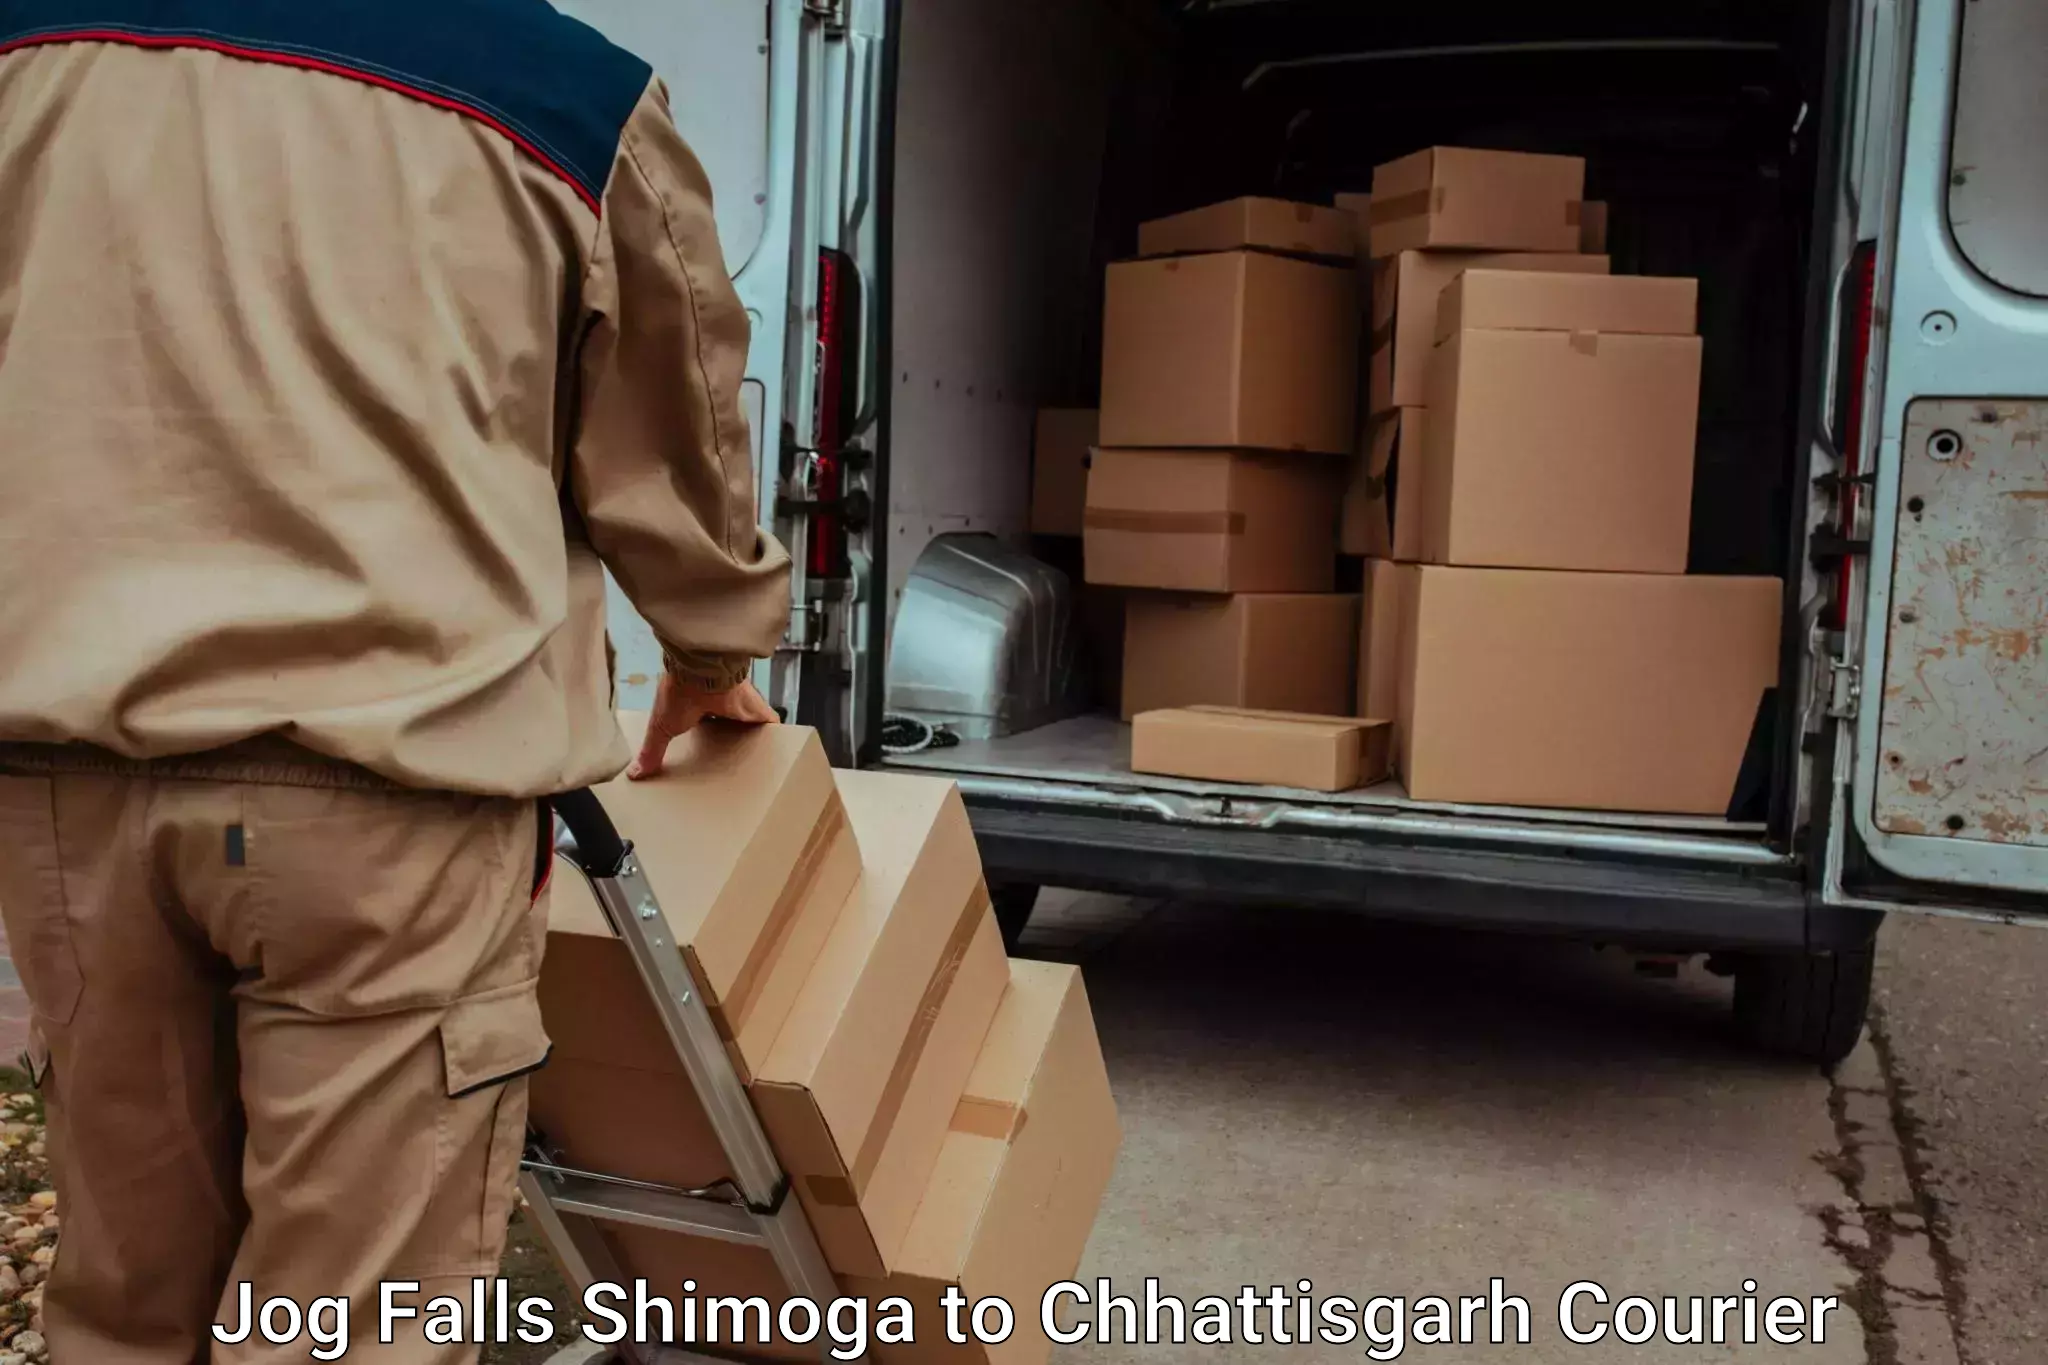 Luggage forwarding service Jog Falls Shimoga to Ambikapur